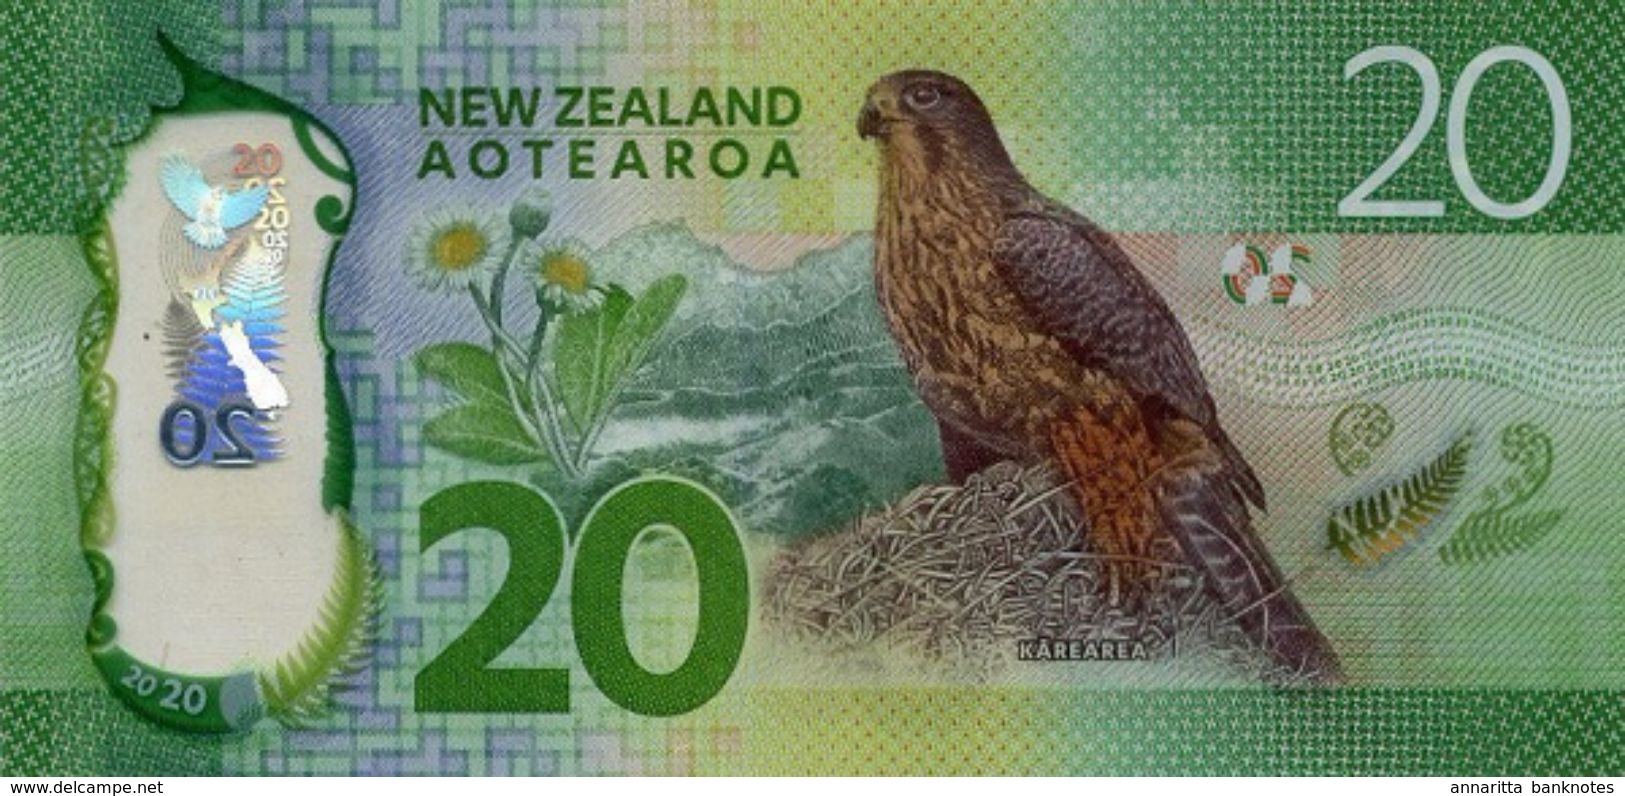 NEW ZEALAND 20 DOLLARS ND (2016) P-193a UNC [NZ139a] - Nieuw-Zeeland